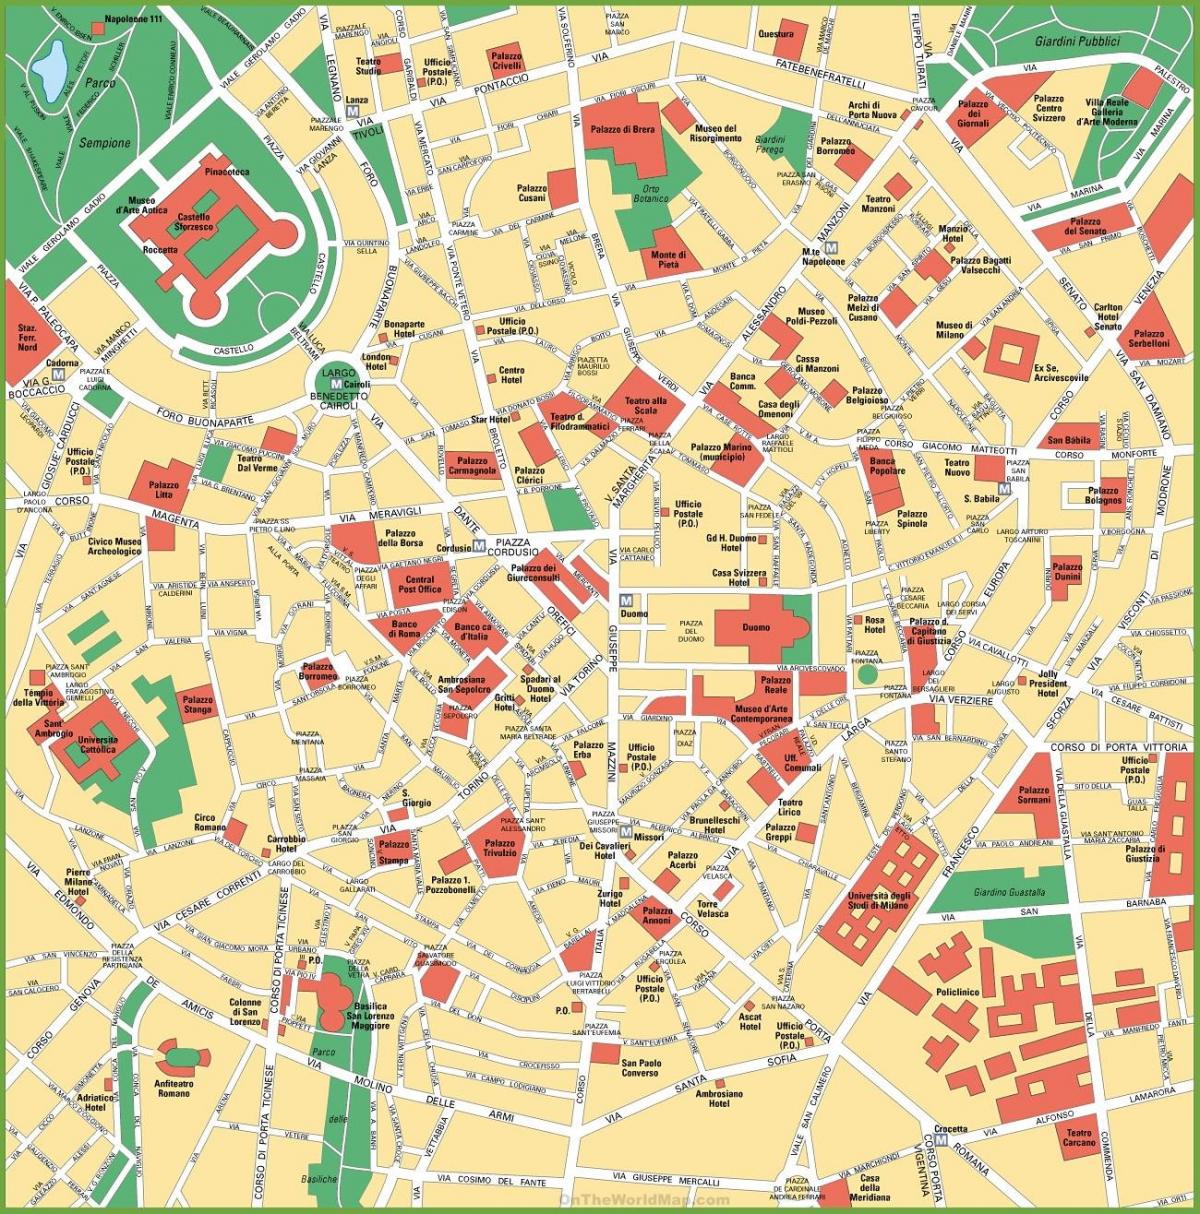 milano city center kart